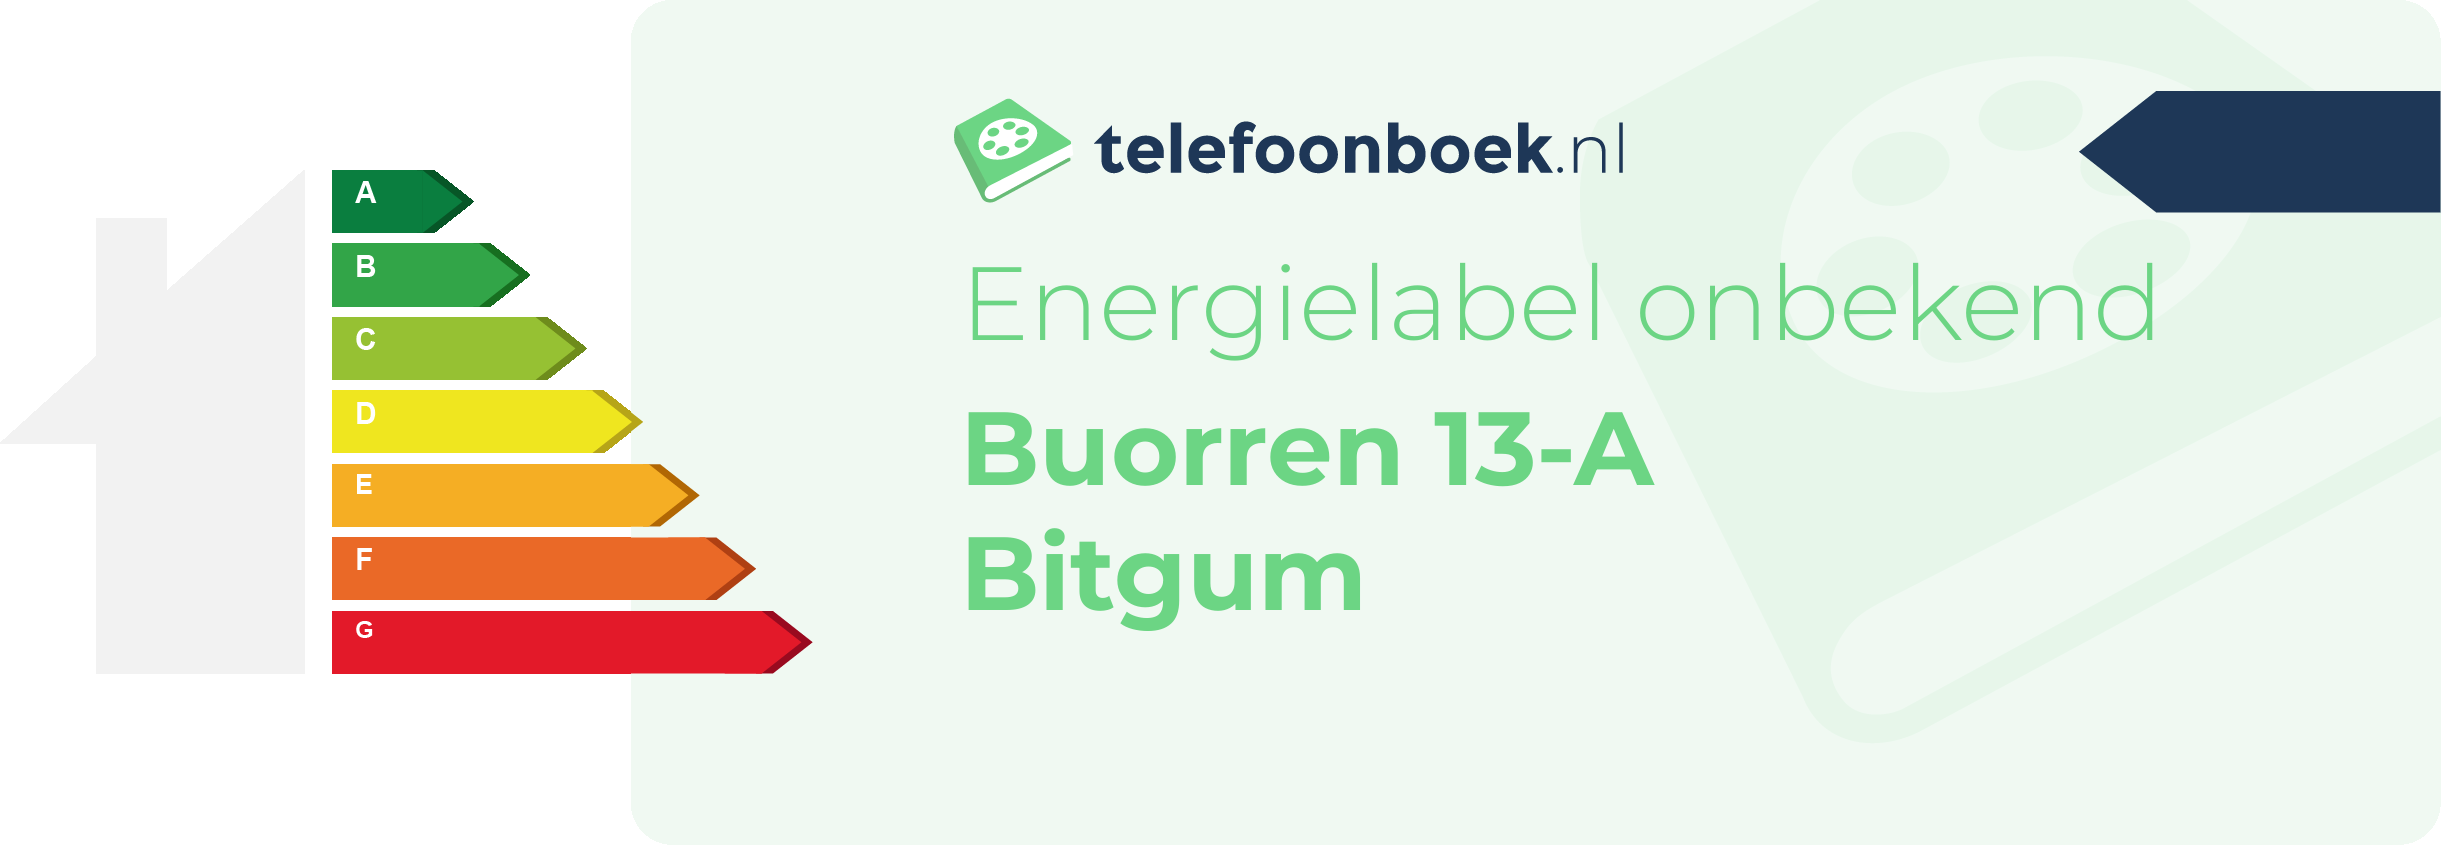 Energielabel Buorren 13-A Bitgum